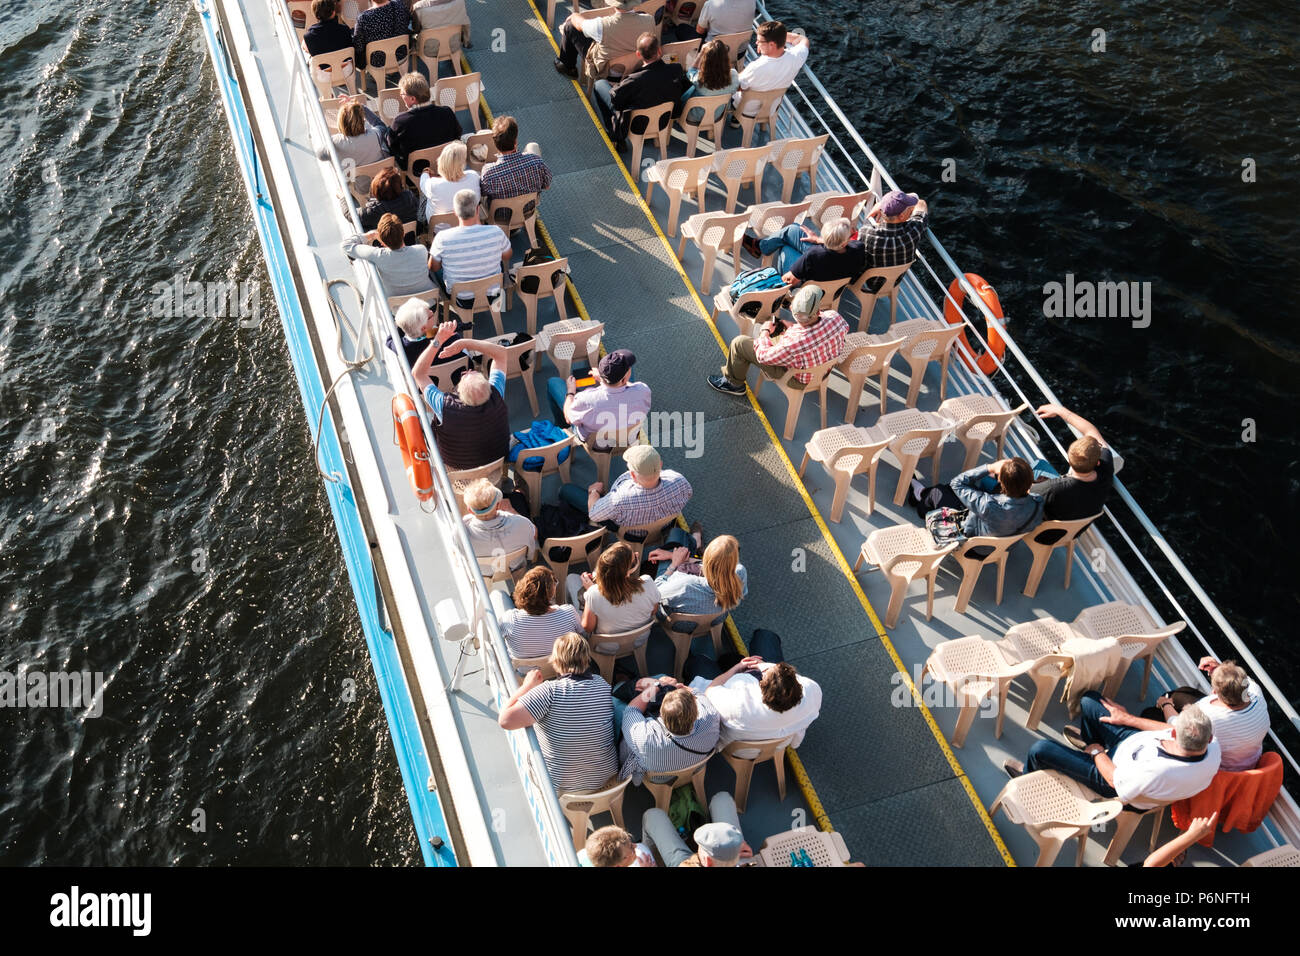 Berlin, Deutschland - Juni 2018: Gruppe von Touristen/Menschen auf touristische Sehenswürdigkeiten Boot von oben in Berlin, Deutschland Stockfoto